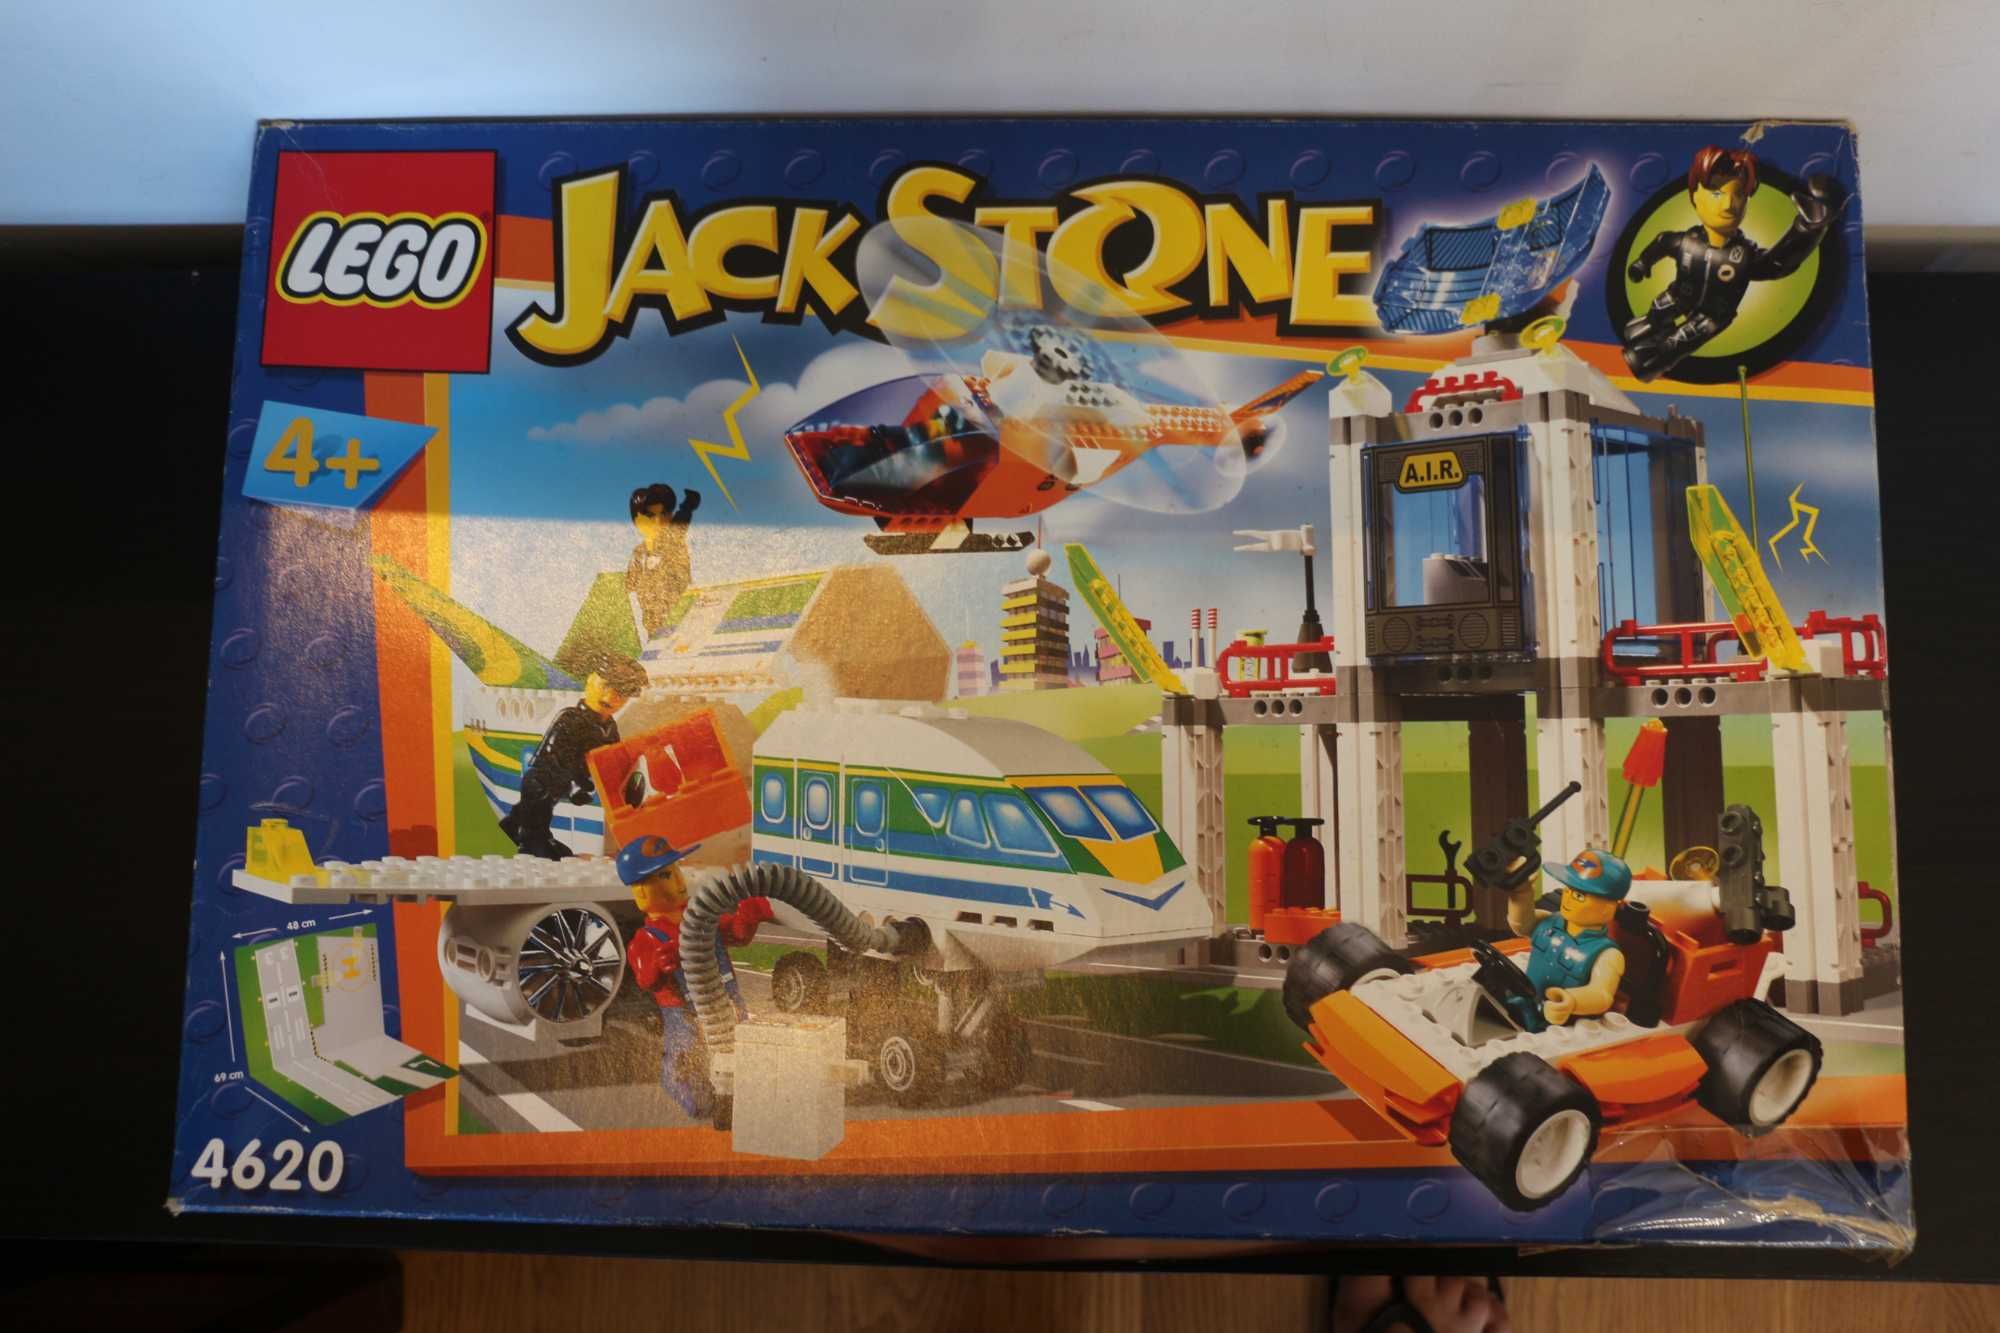 Lego Jack Stone 4620